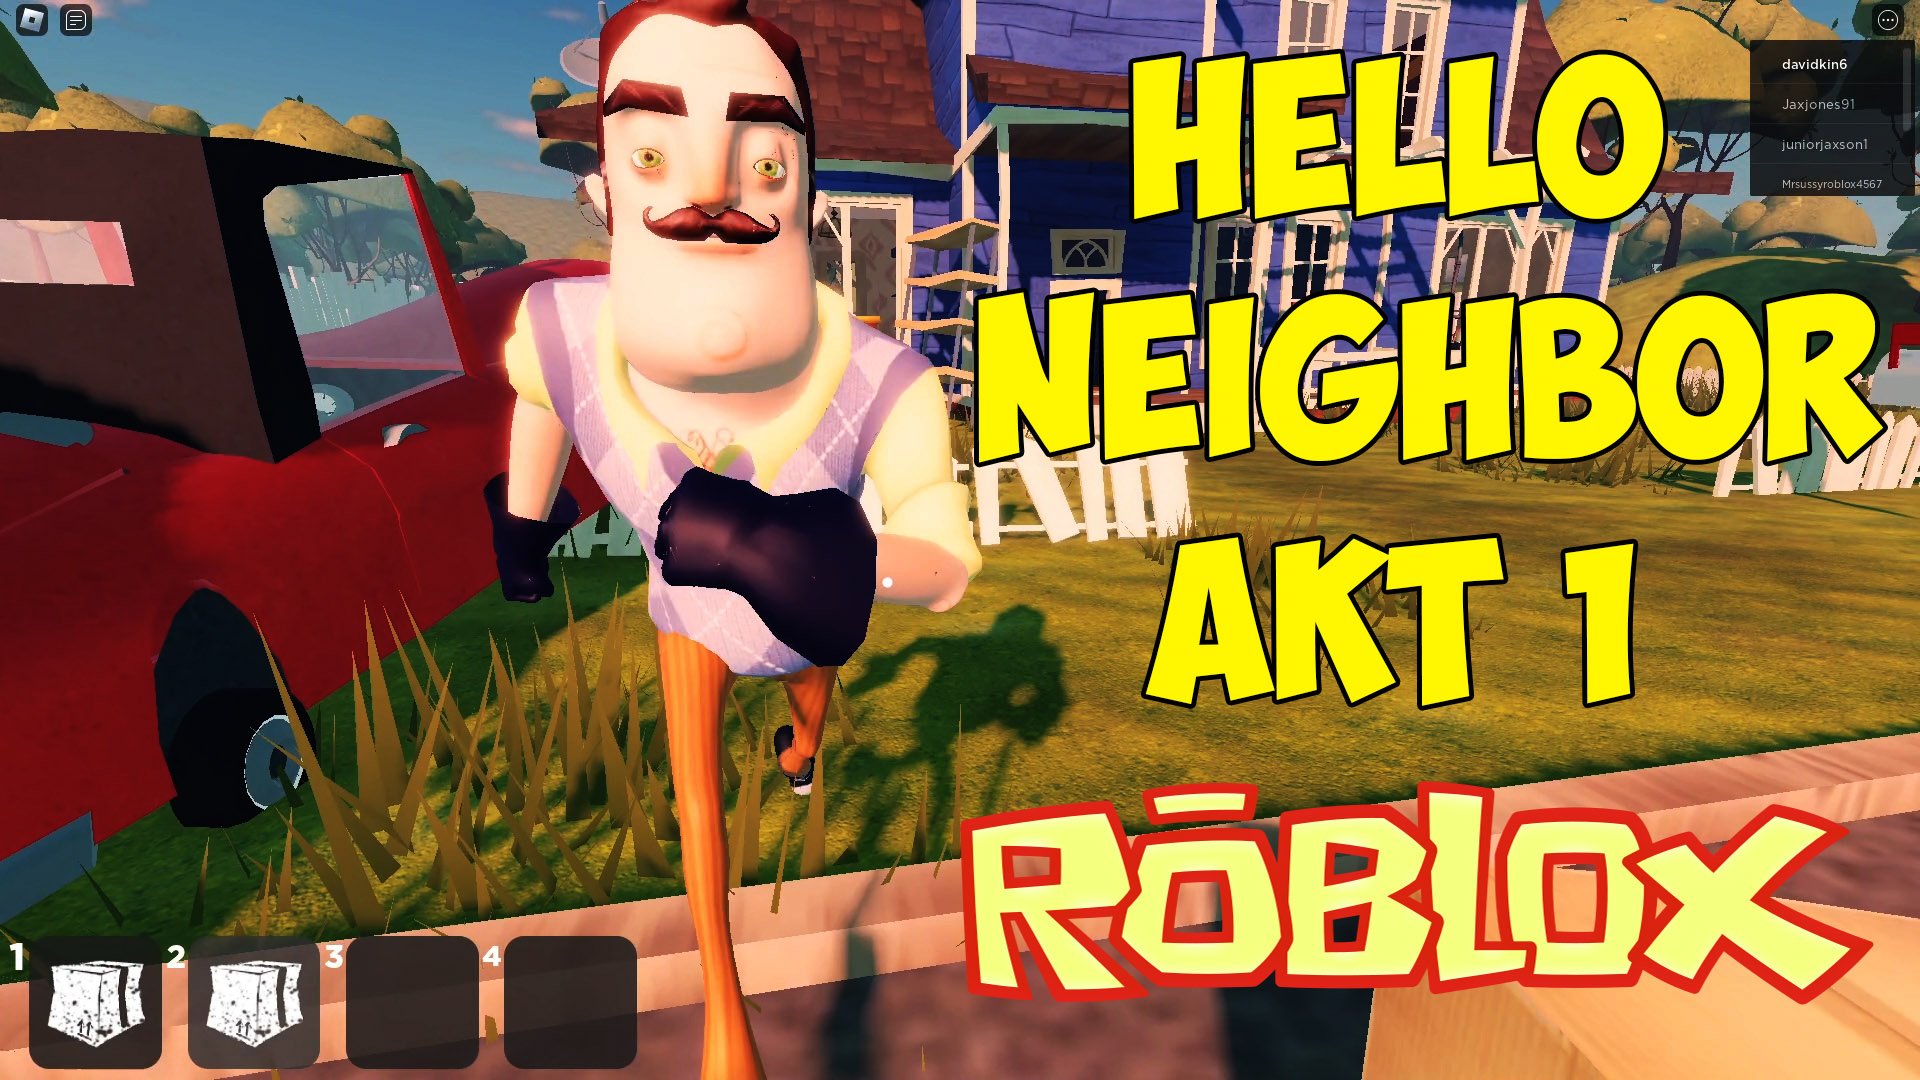 Включи роблокс сосед. Привет сосед РОБЛОКС. Привет сосед РОБЛОКС акт 1. Видео привет сосед.